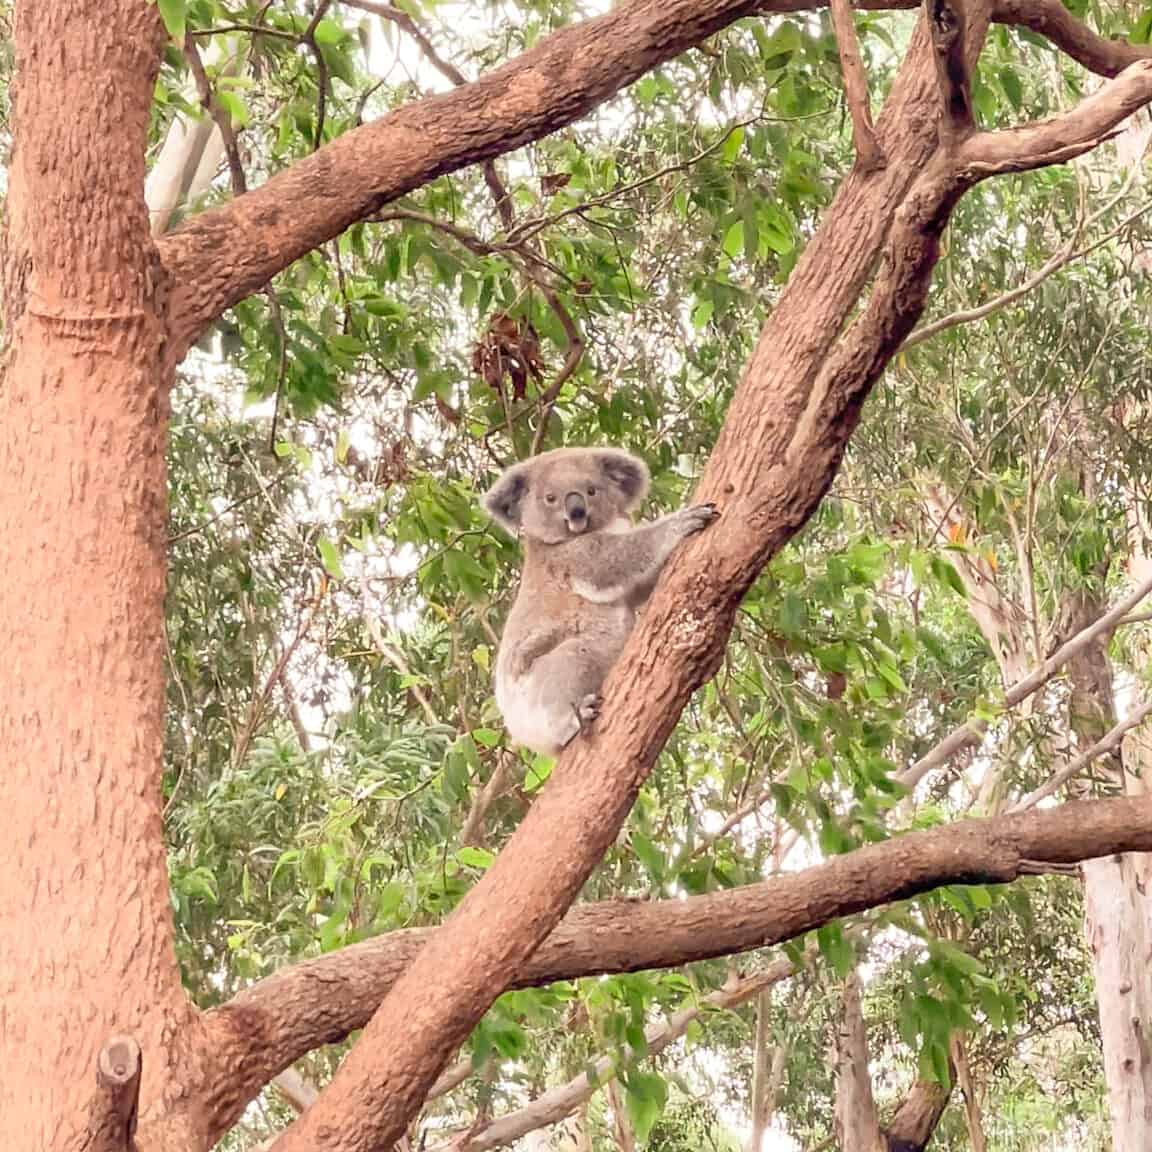 Koala in a tree from the the Port Macquarie Koala Hospital